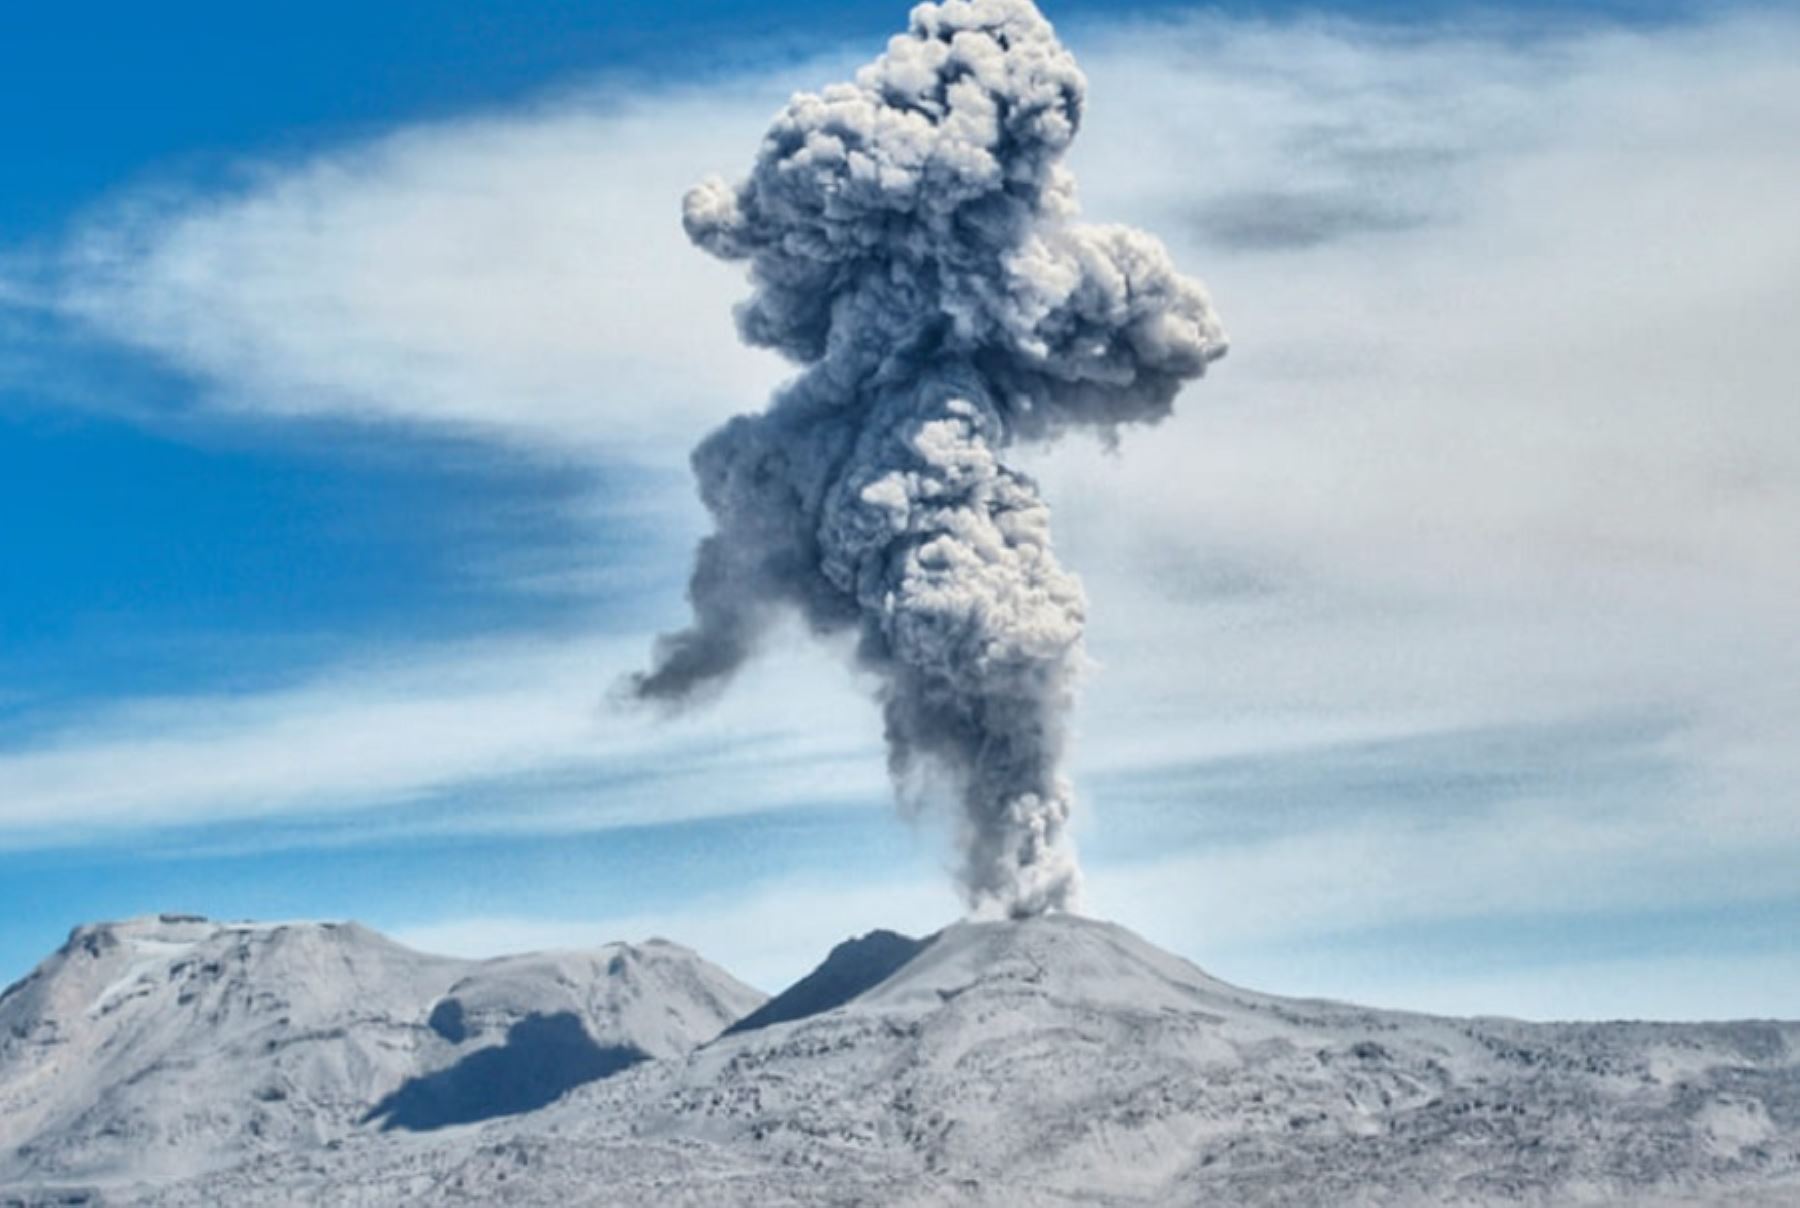 El volcán Ubinas, ubicado en Moquegua, registró esta mañana una fuerte explosión con expulsión de cenizas y gases que alcanzaron una altura de hasta 3,300 kilómetros, informó el Centro Vulcanológico Nacional del Instituto Geofísico del Perú